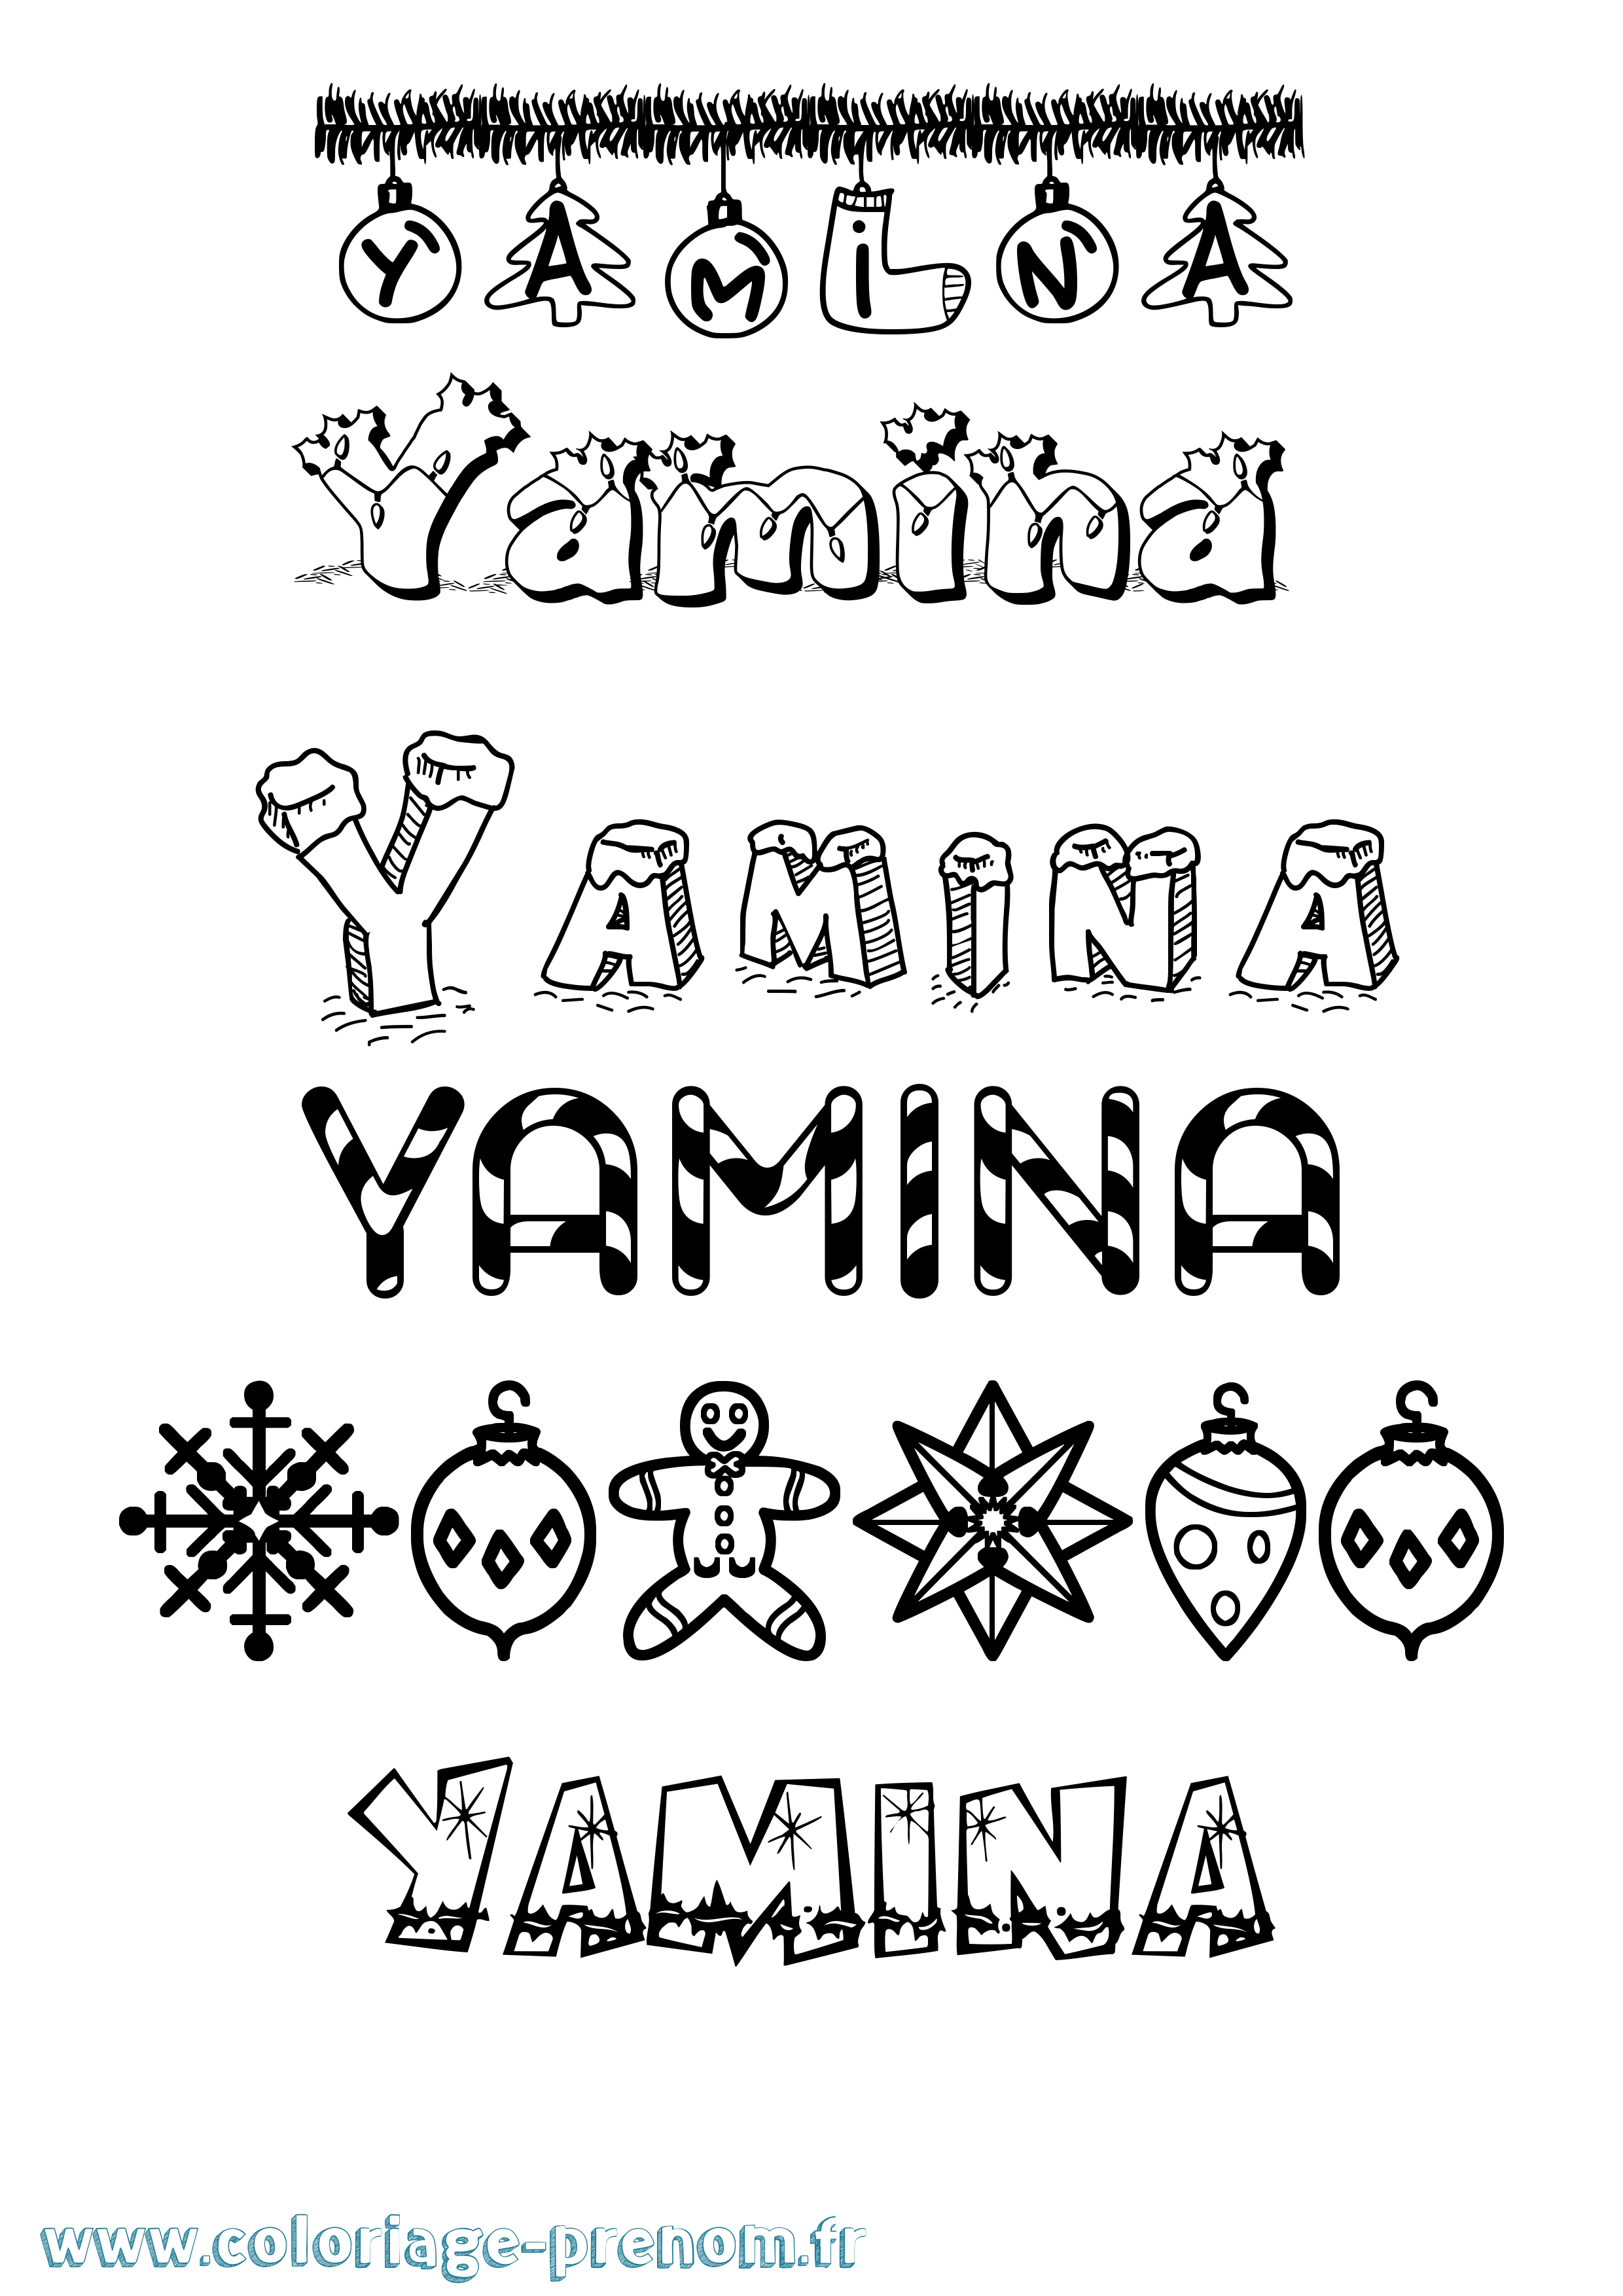 Coloriage prénom Yamina